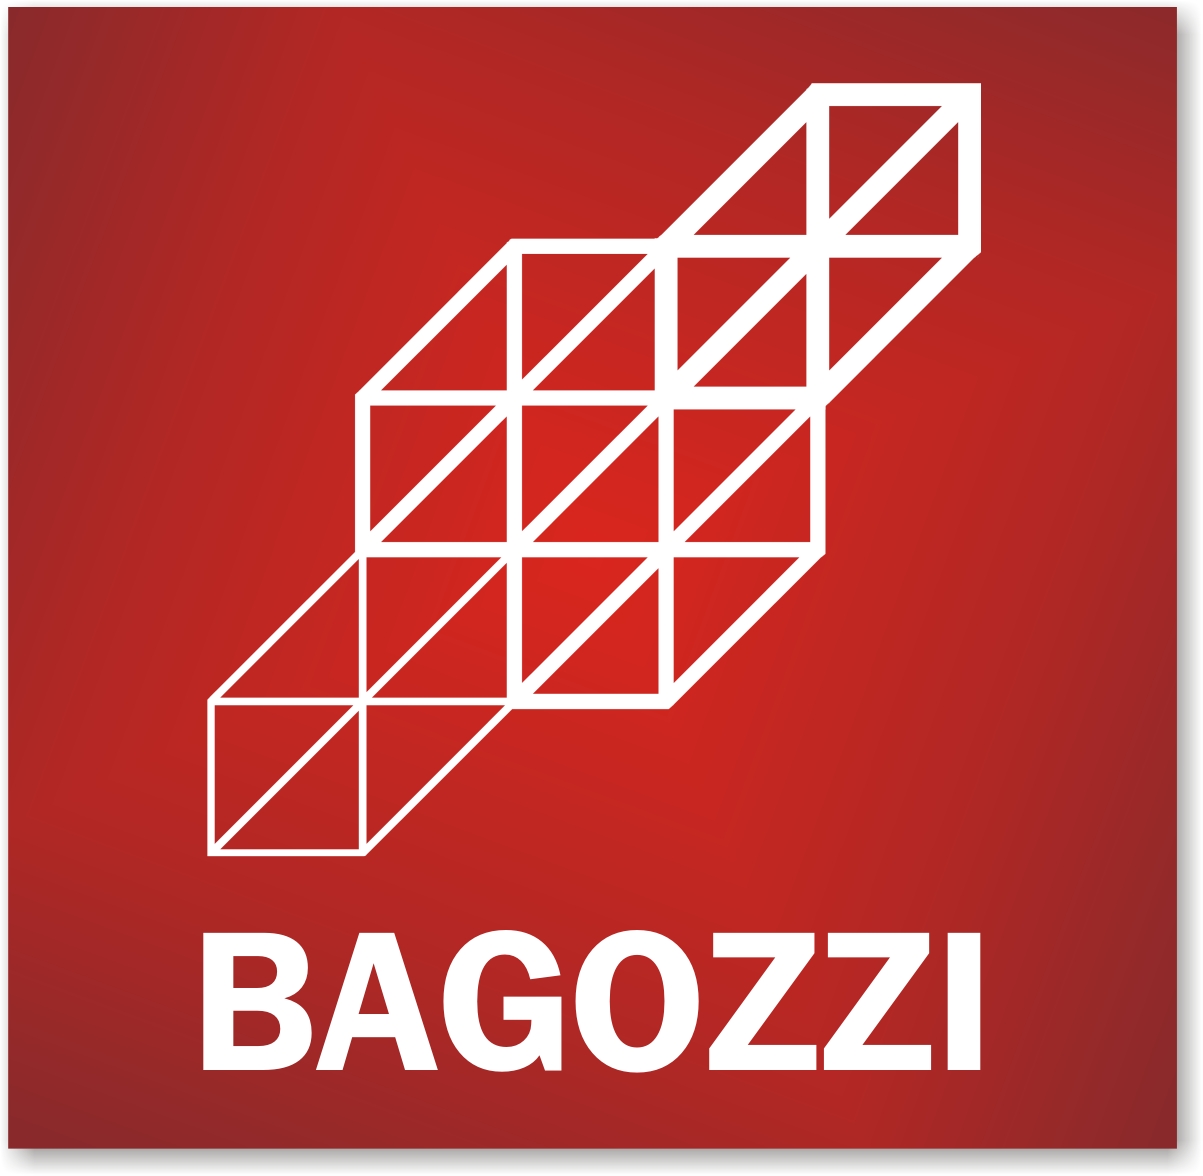 Bagozzi